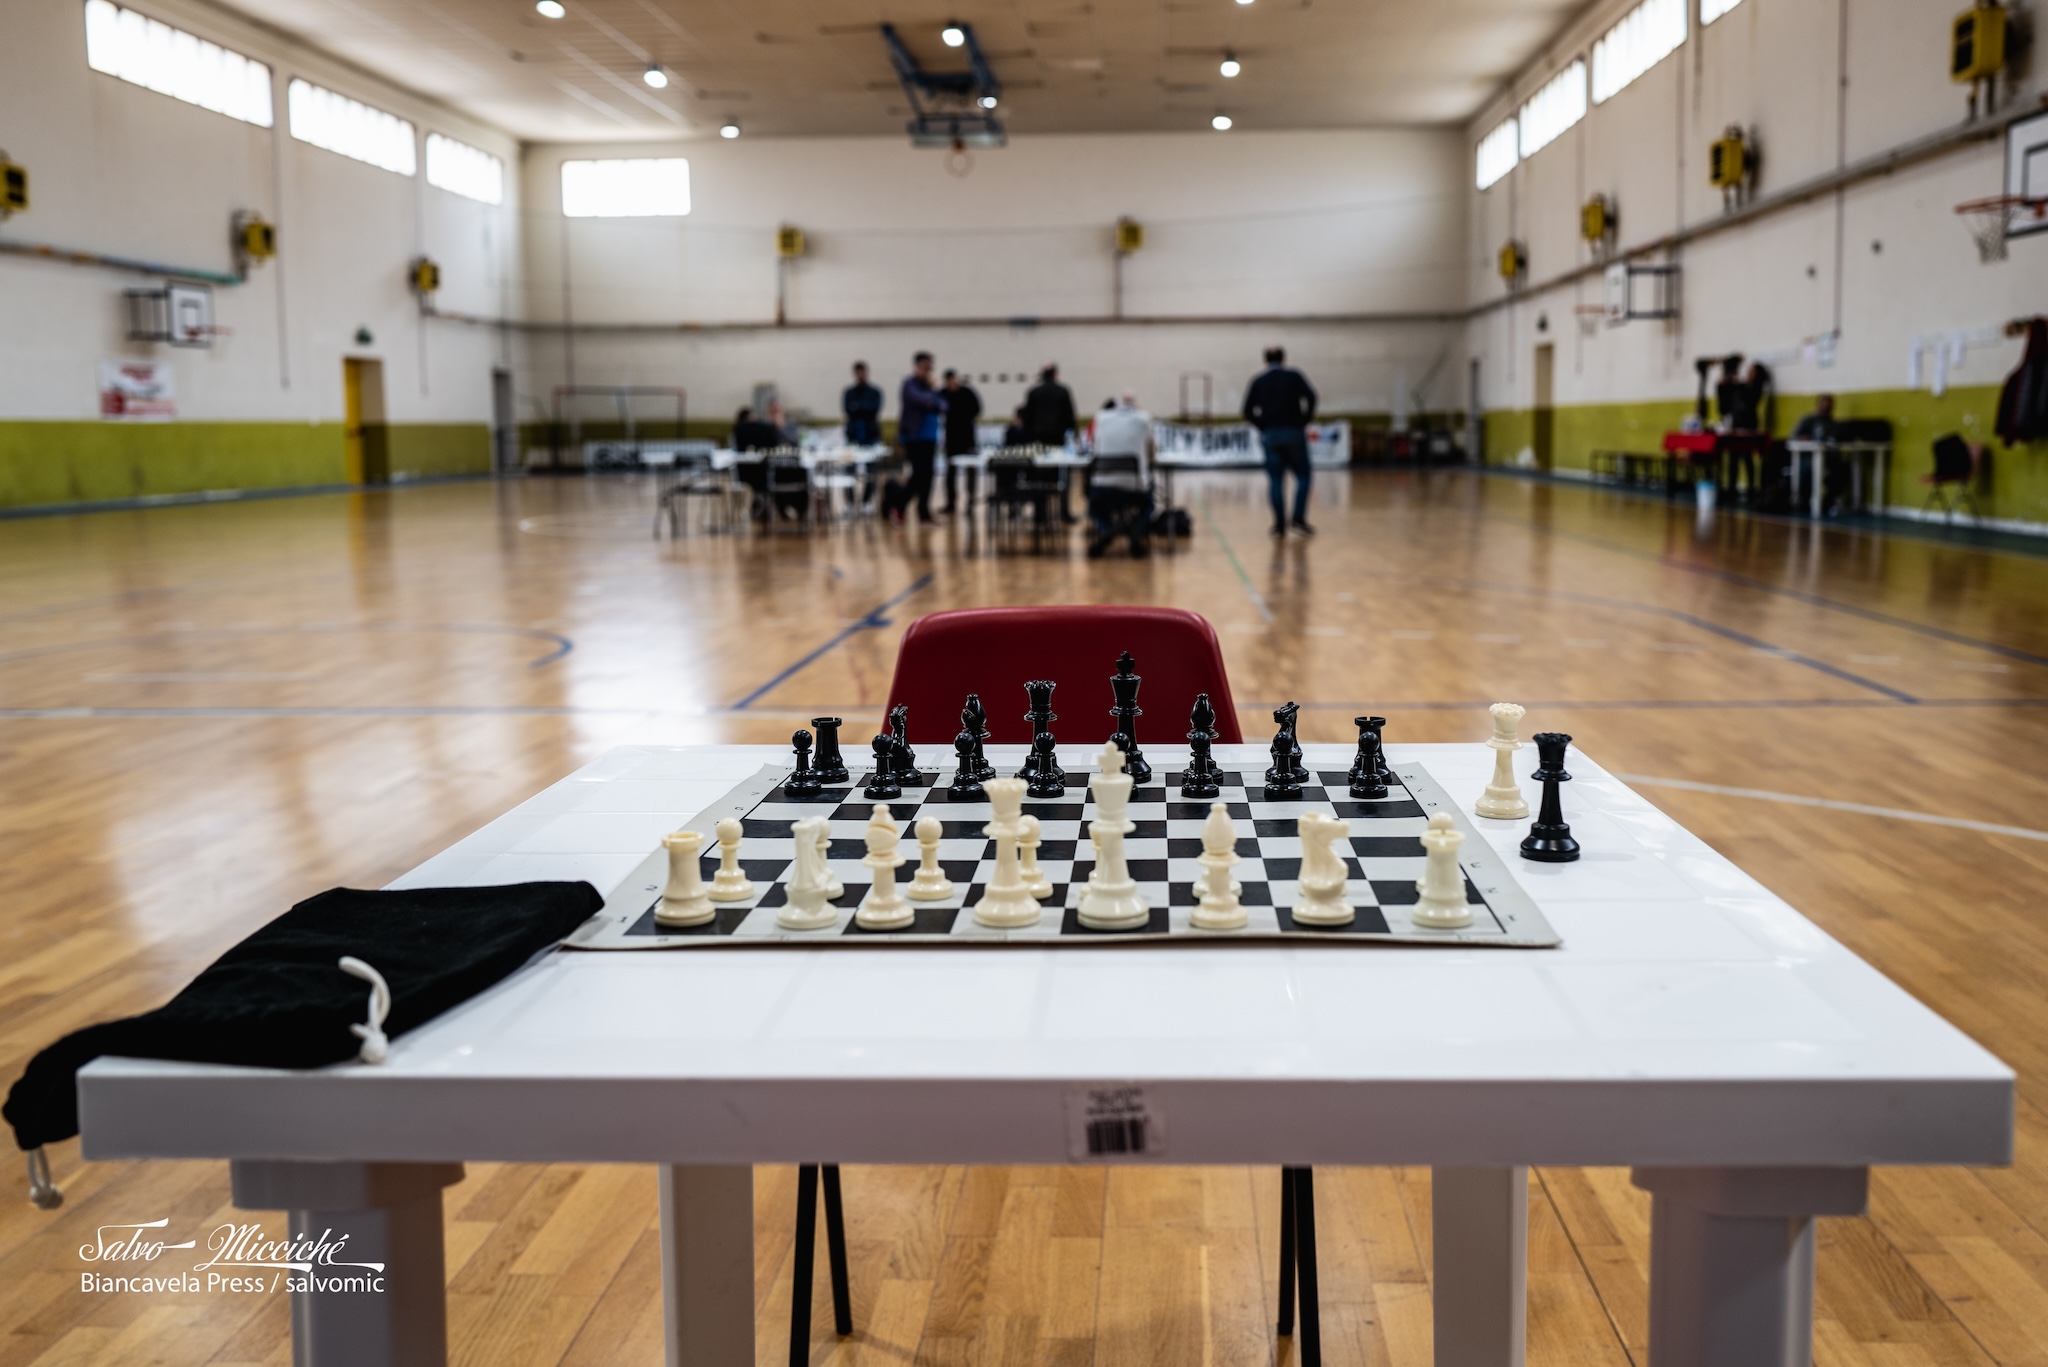 Si sbaglia ma non si deve restare "sbagliati": scacchi per i detenuti, a Ragusa